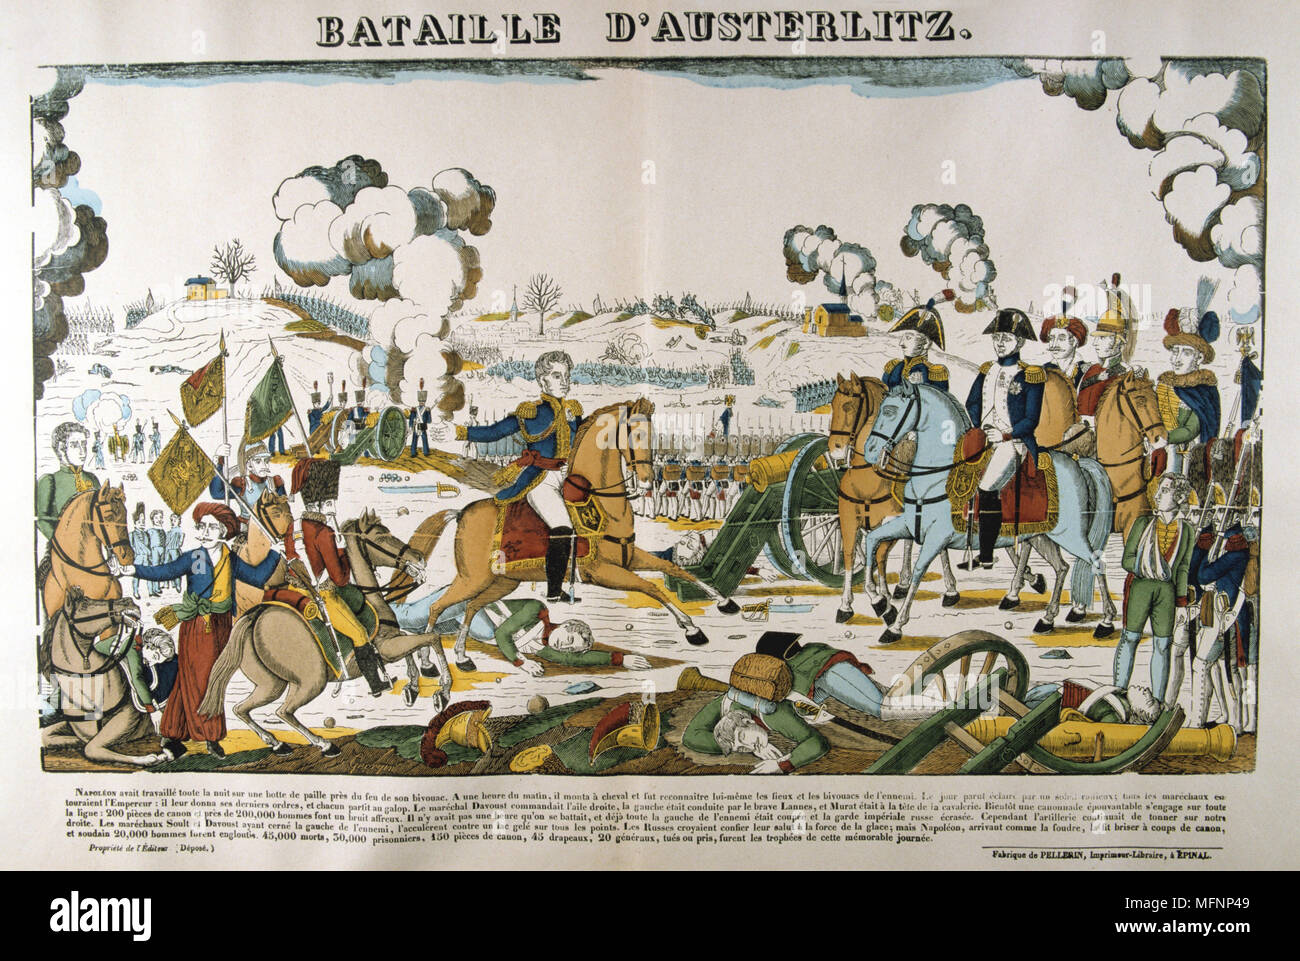 Napoleon in der Schlacht bei Austerlitz (Bitva u Slavkova) auch die Schlacht der drei Kaiser, l Dezember 1805 bekannt. Entscheidende Sieg Frankreichs über die russische und österreichische Herrschaft, einer der größten Siege Napoleons. Beliebte Französische handkolorierter Holzschnitt. Stockfoto